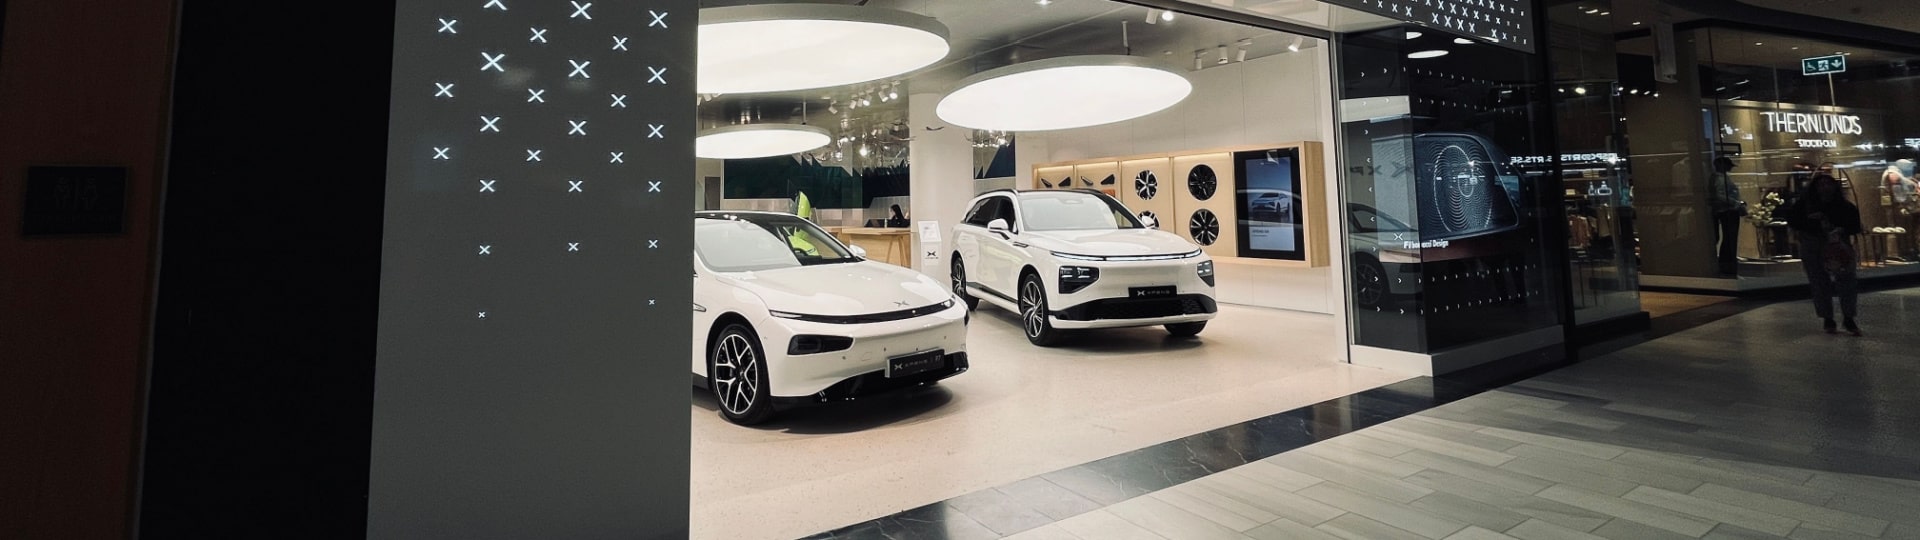 Čínský výrobce elektromobilů Xpeng chystá další expanzi v Evropě